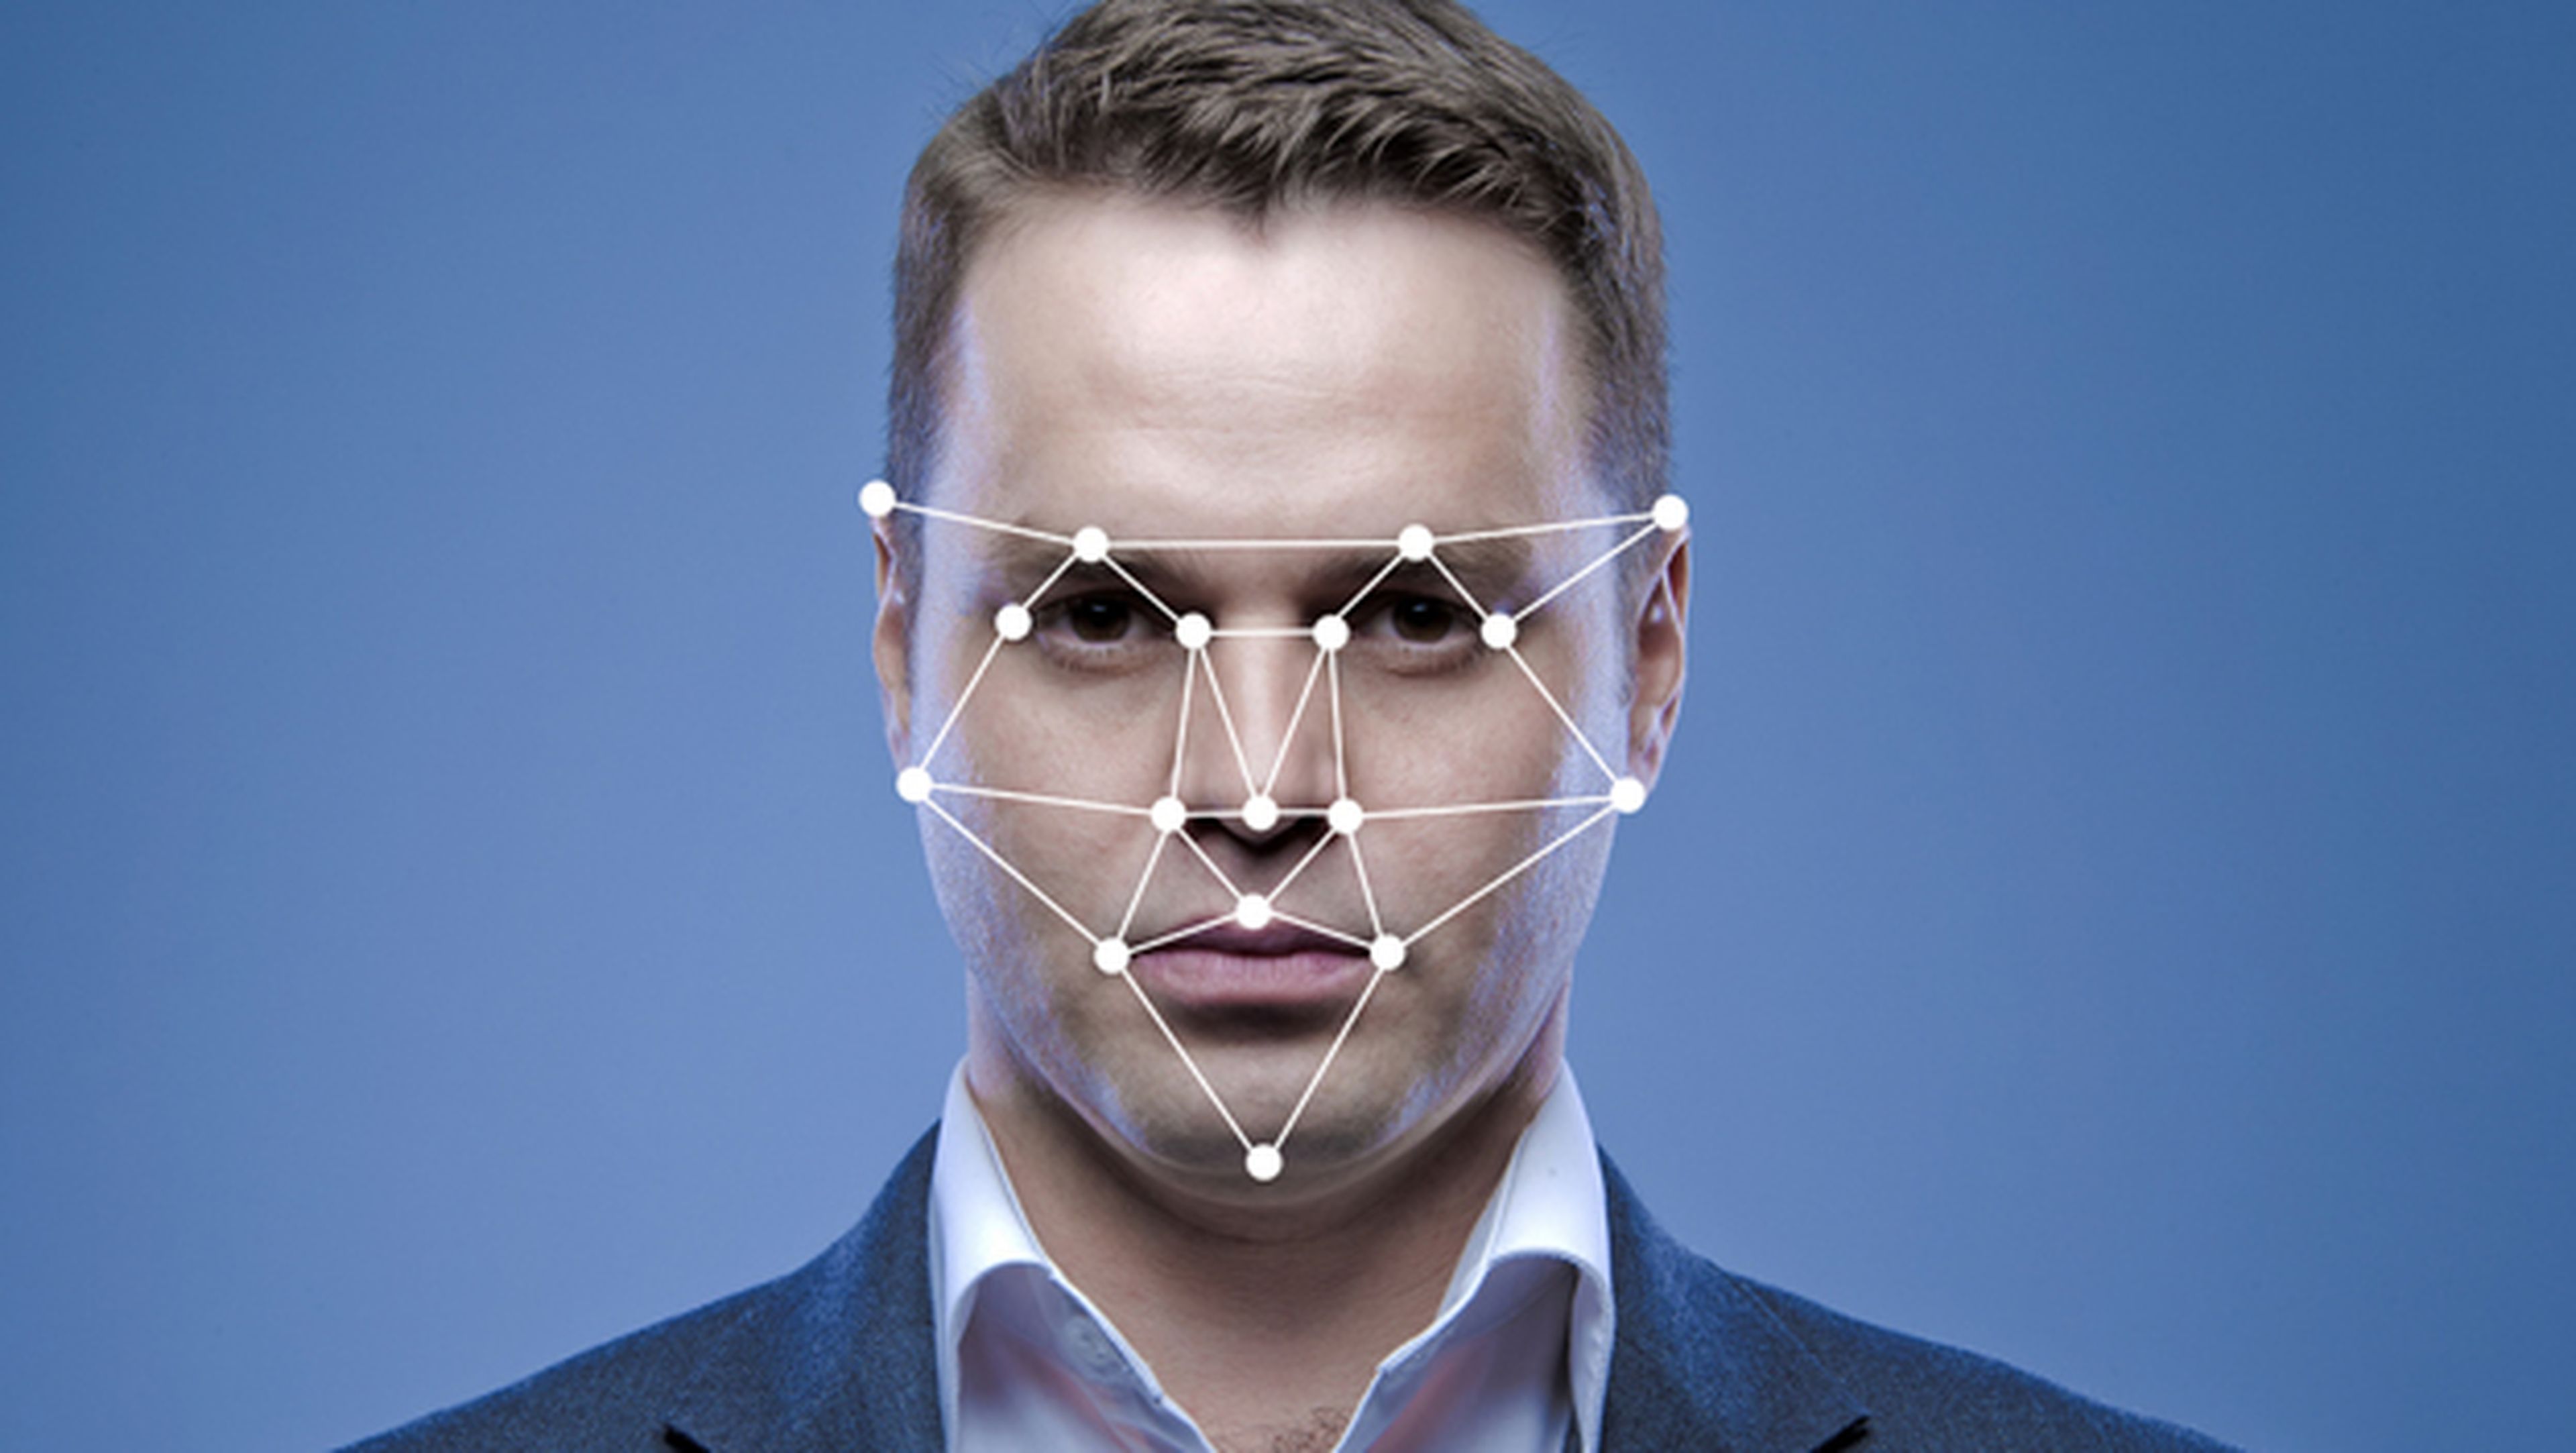 Sistemas de reconocimiento facial, ¿el fin del anonimato?